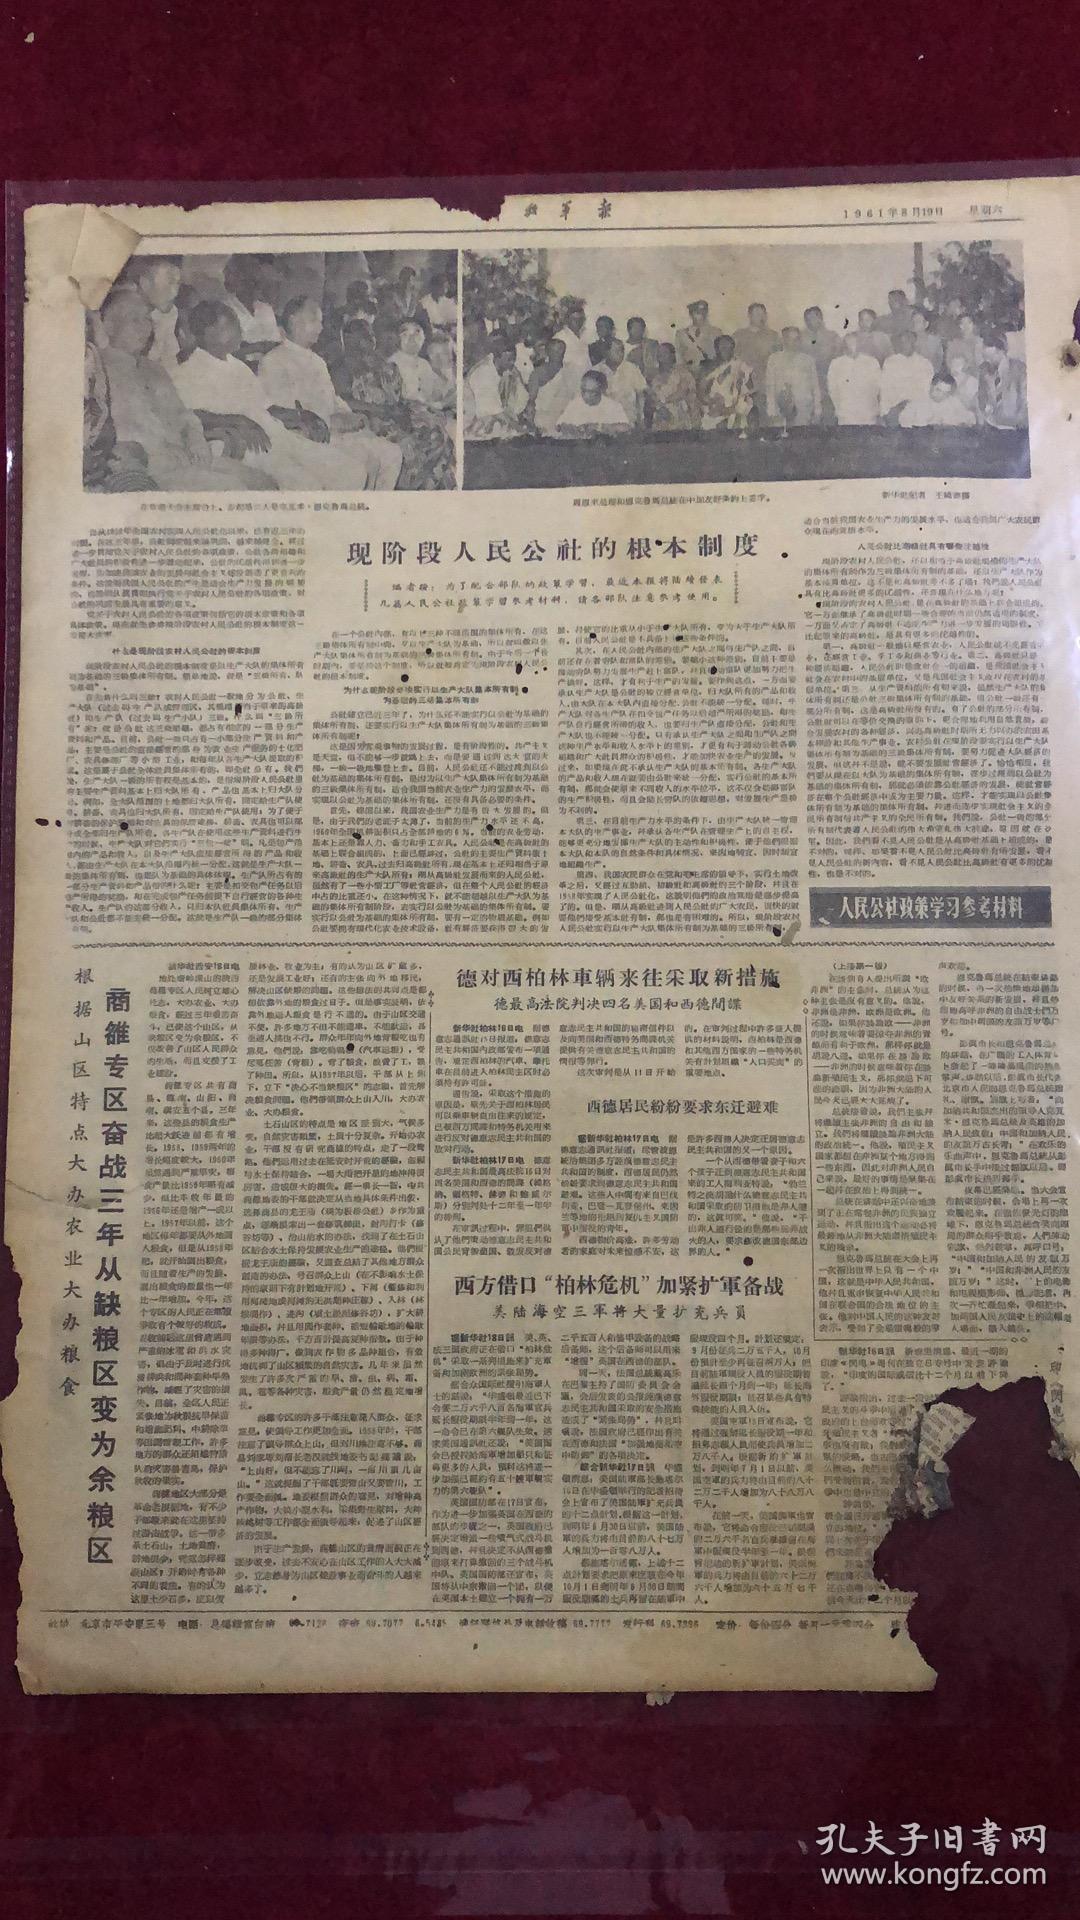 解放军报1961年8月19日（4开四版）
毛主席接见古拉特副总统。
中国加纳发表联合公报和缔结友好条约。